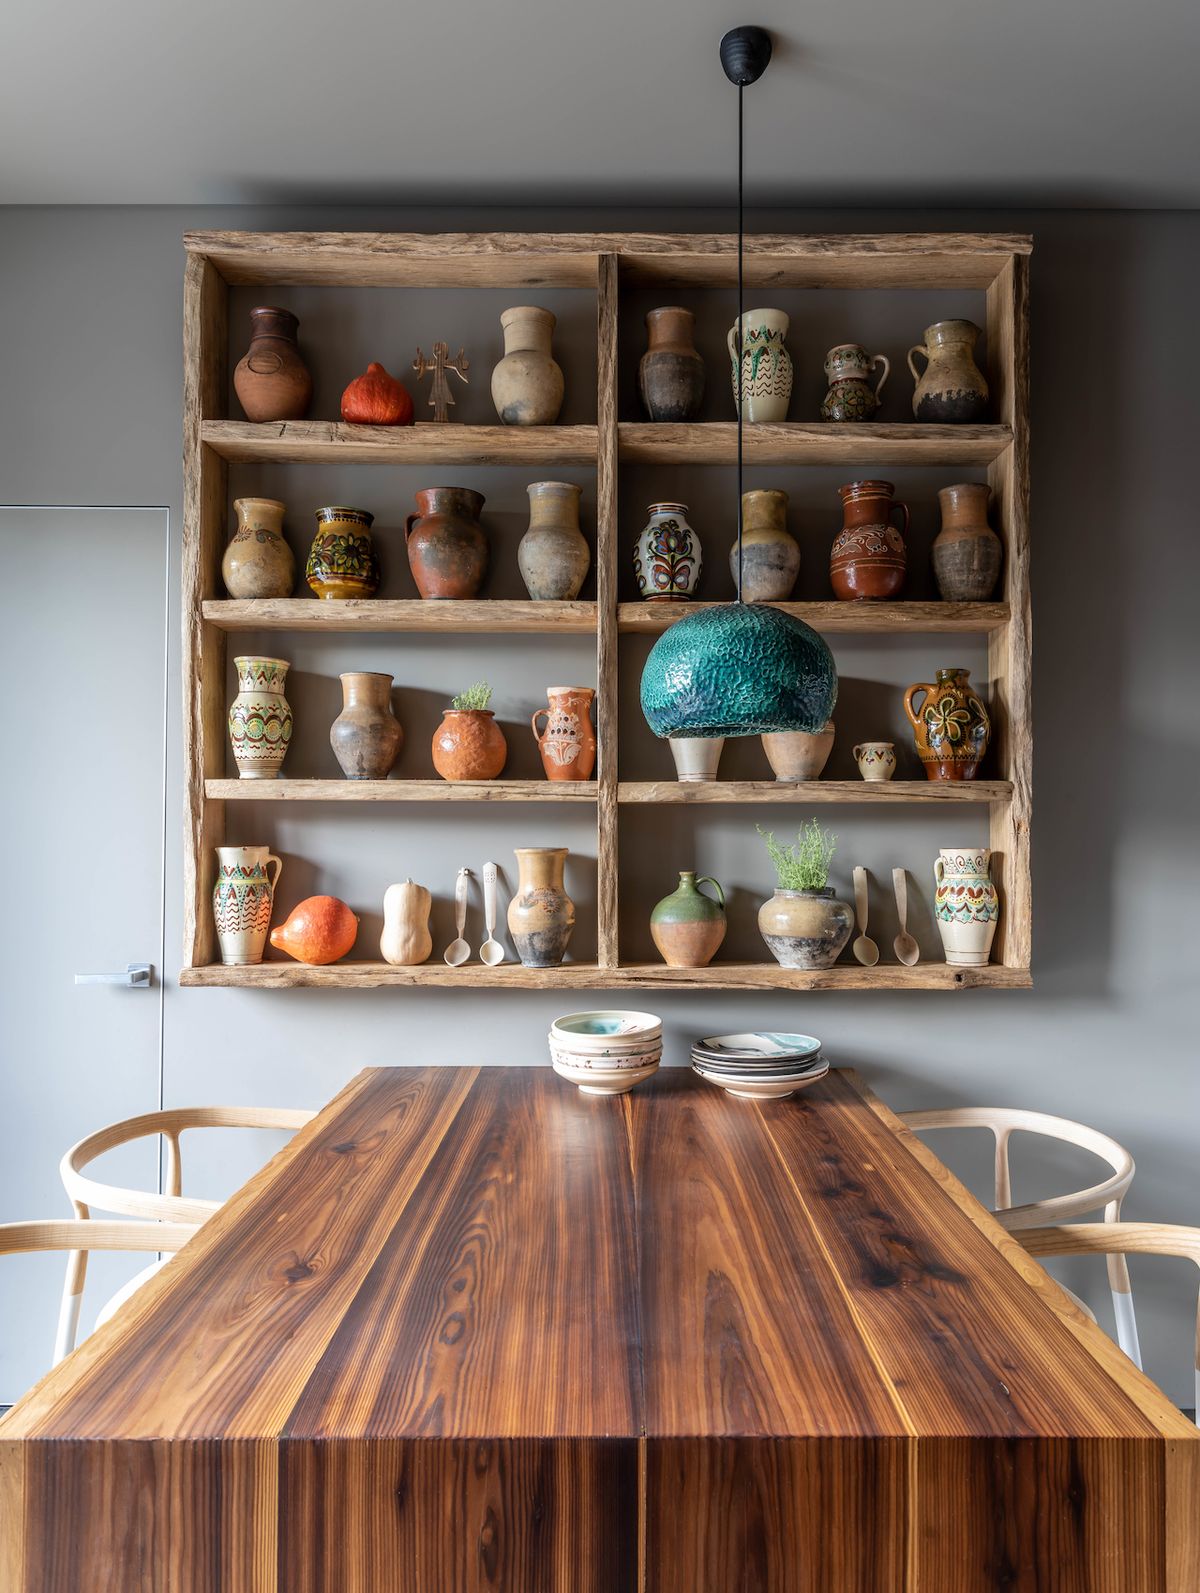 Nad masivním dřevěným stolem v tradiční ukrajinské kuchyni nechybí ani tzv. mysnyk - poličky určené k ukládání potravin. V této domácnosti zde nalezla místo keramika.